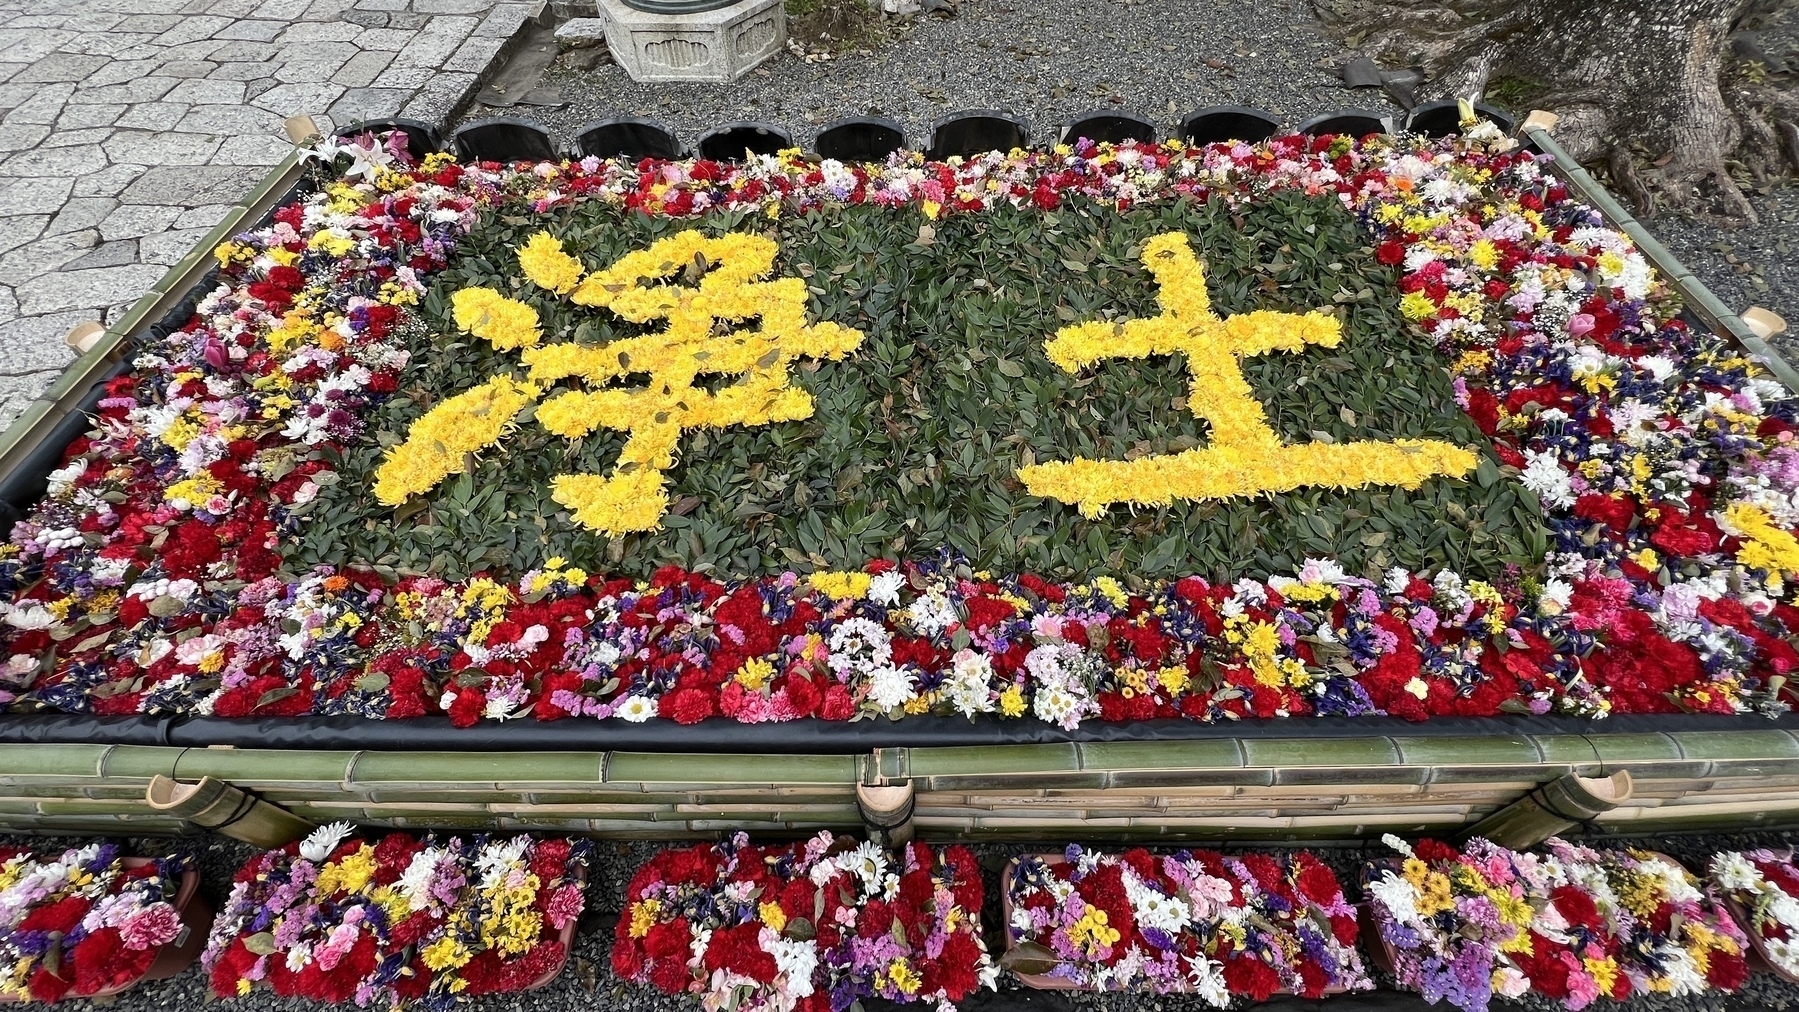 浄土 (pure land) spelled out in Flowers